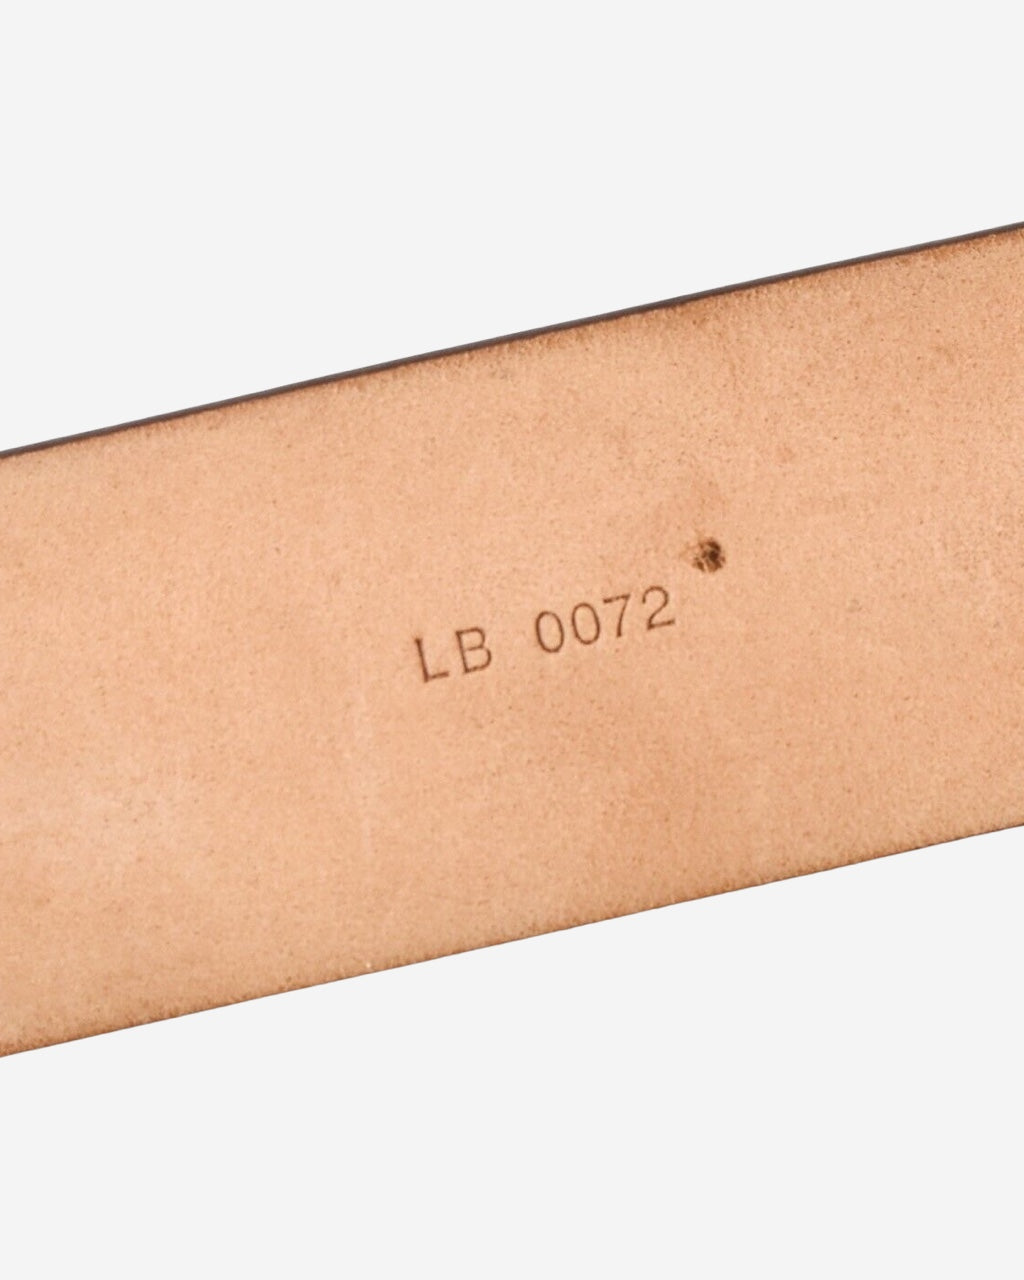 Cinturón Louis Vuitton Monogram